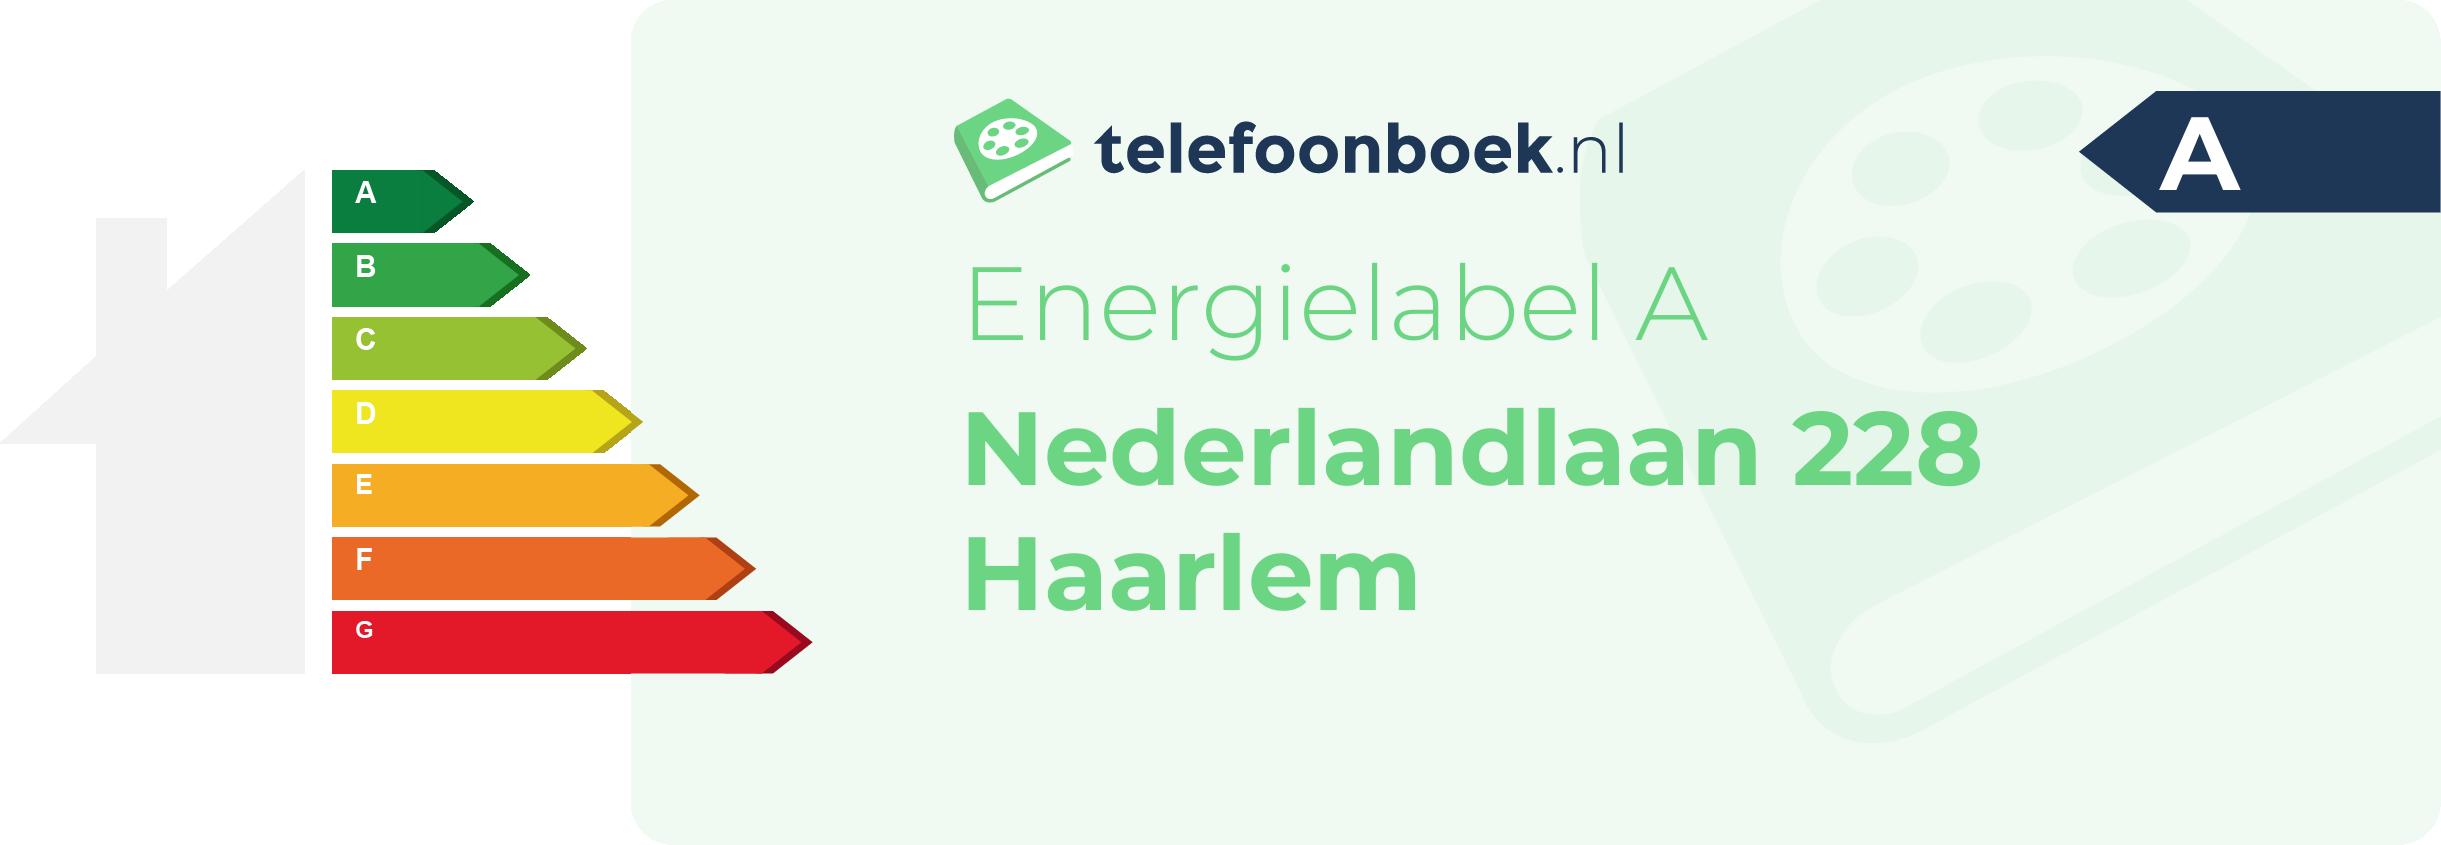 Energielabel Nederlandlaan 228 Haarlem